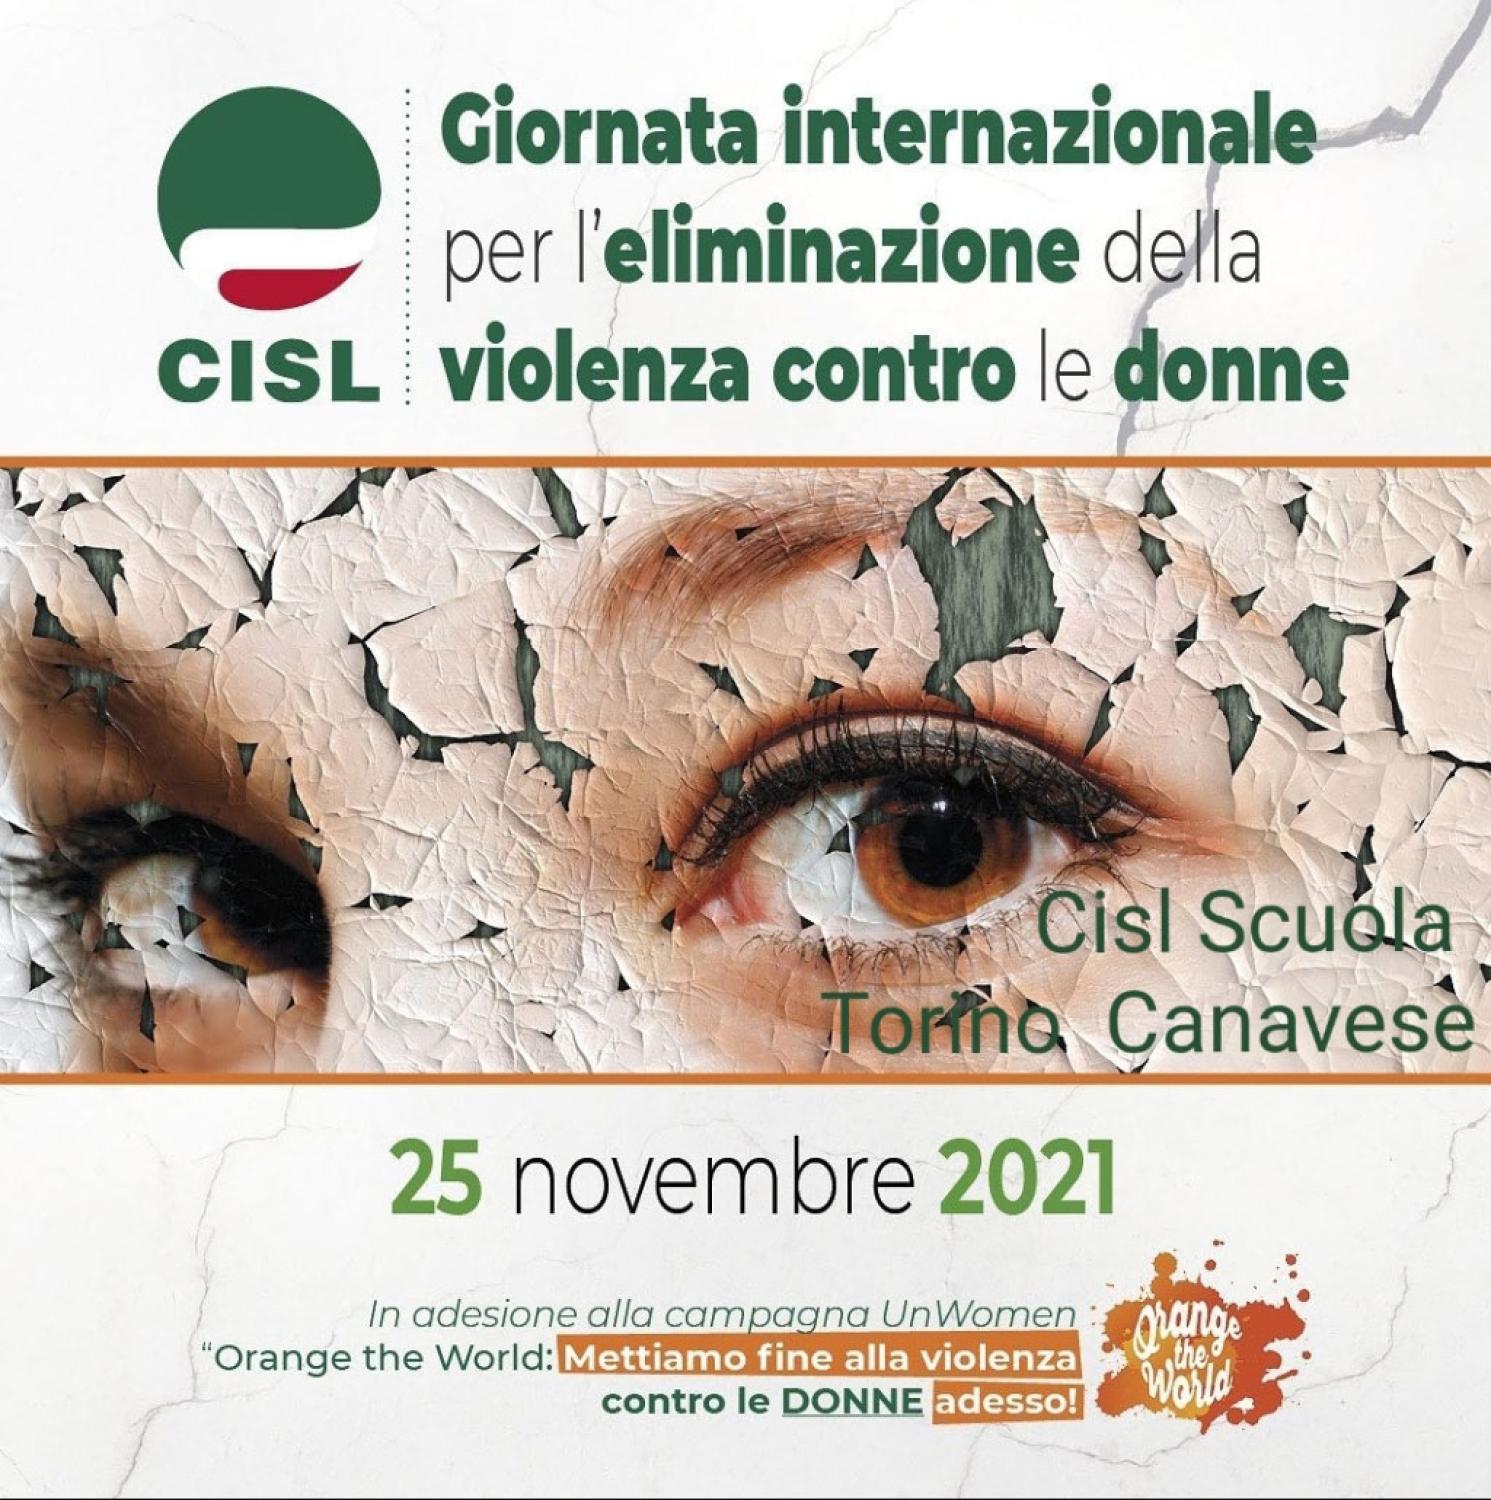 CISL Scuola - 25 novembre giornata internazionale per l’eliminazione della violenza contro le donne